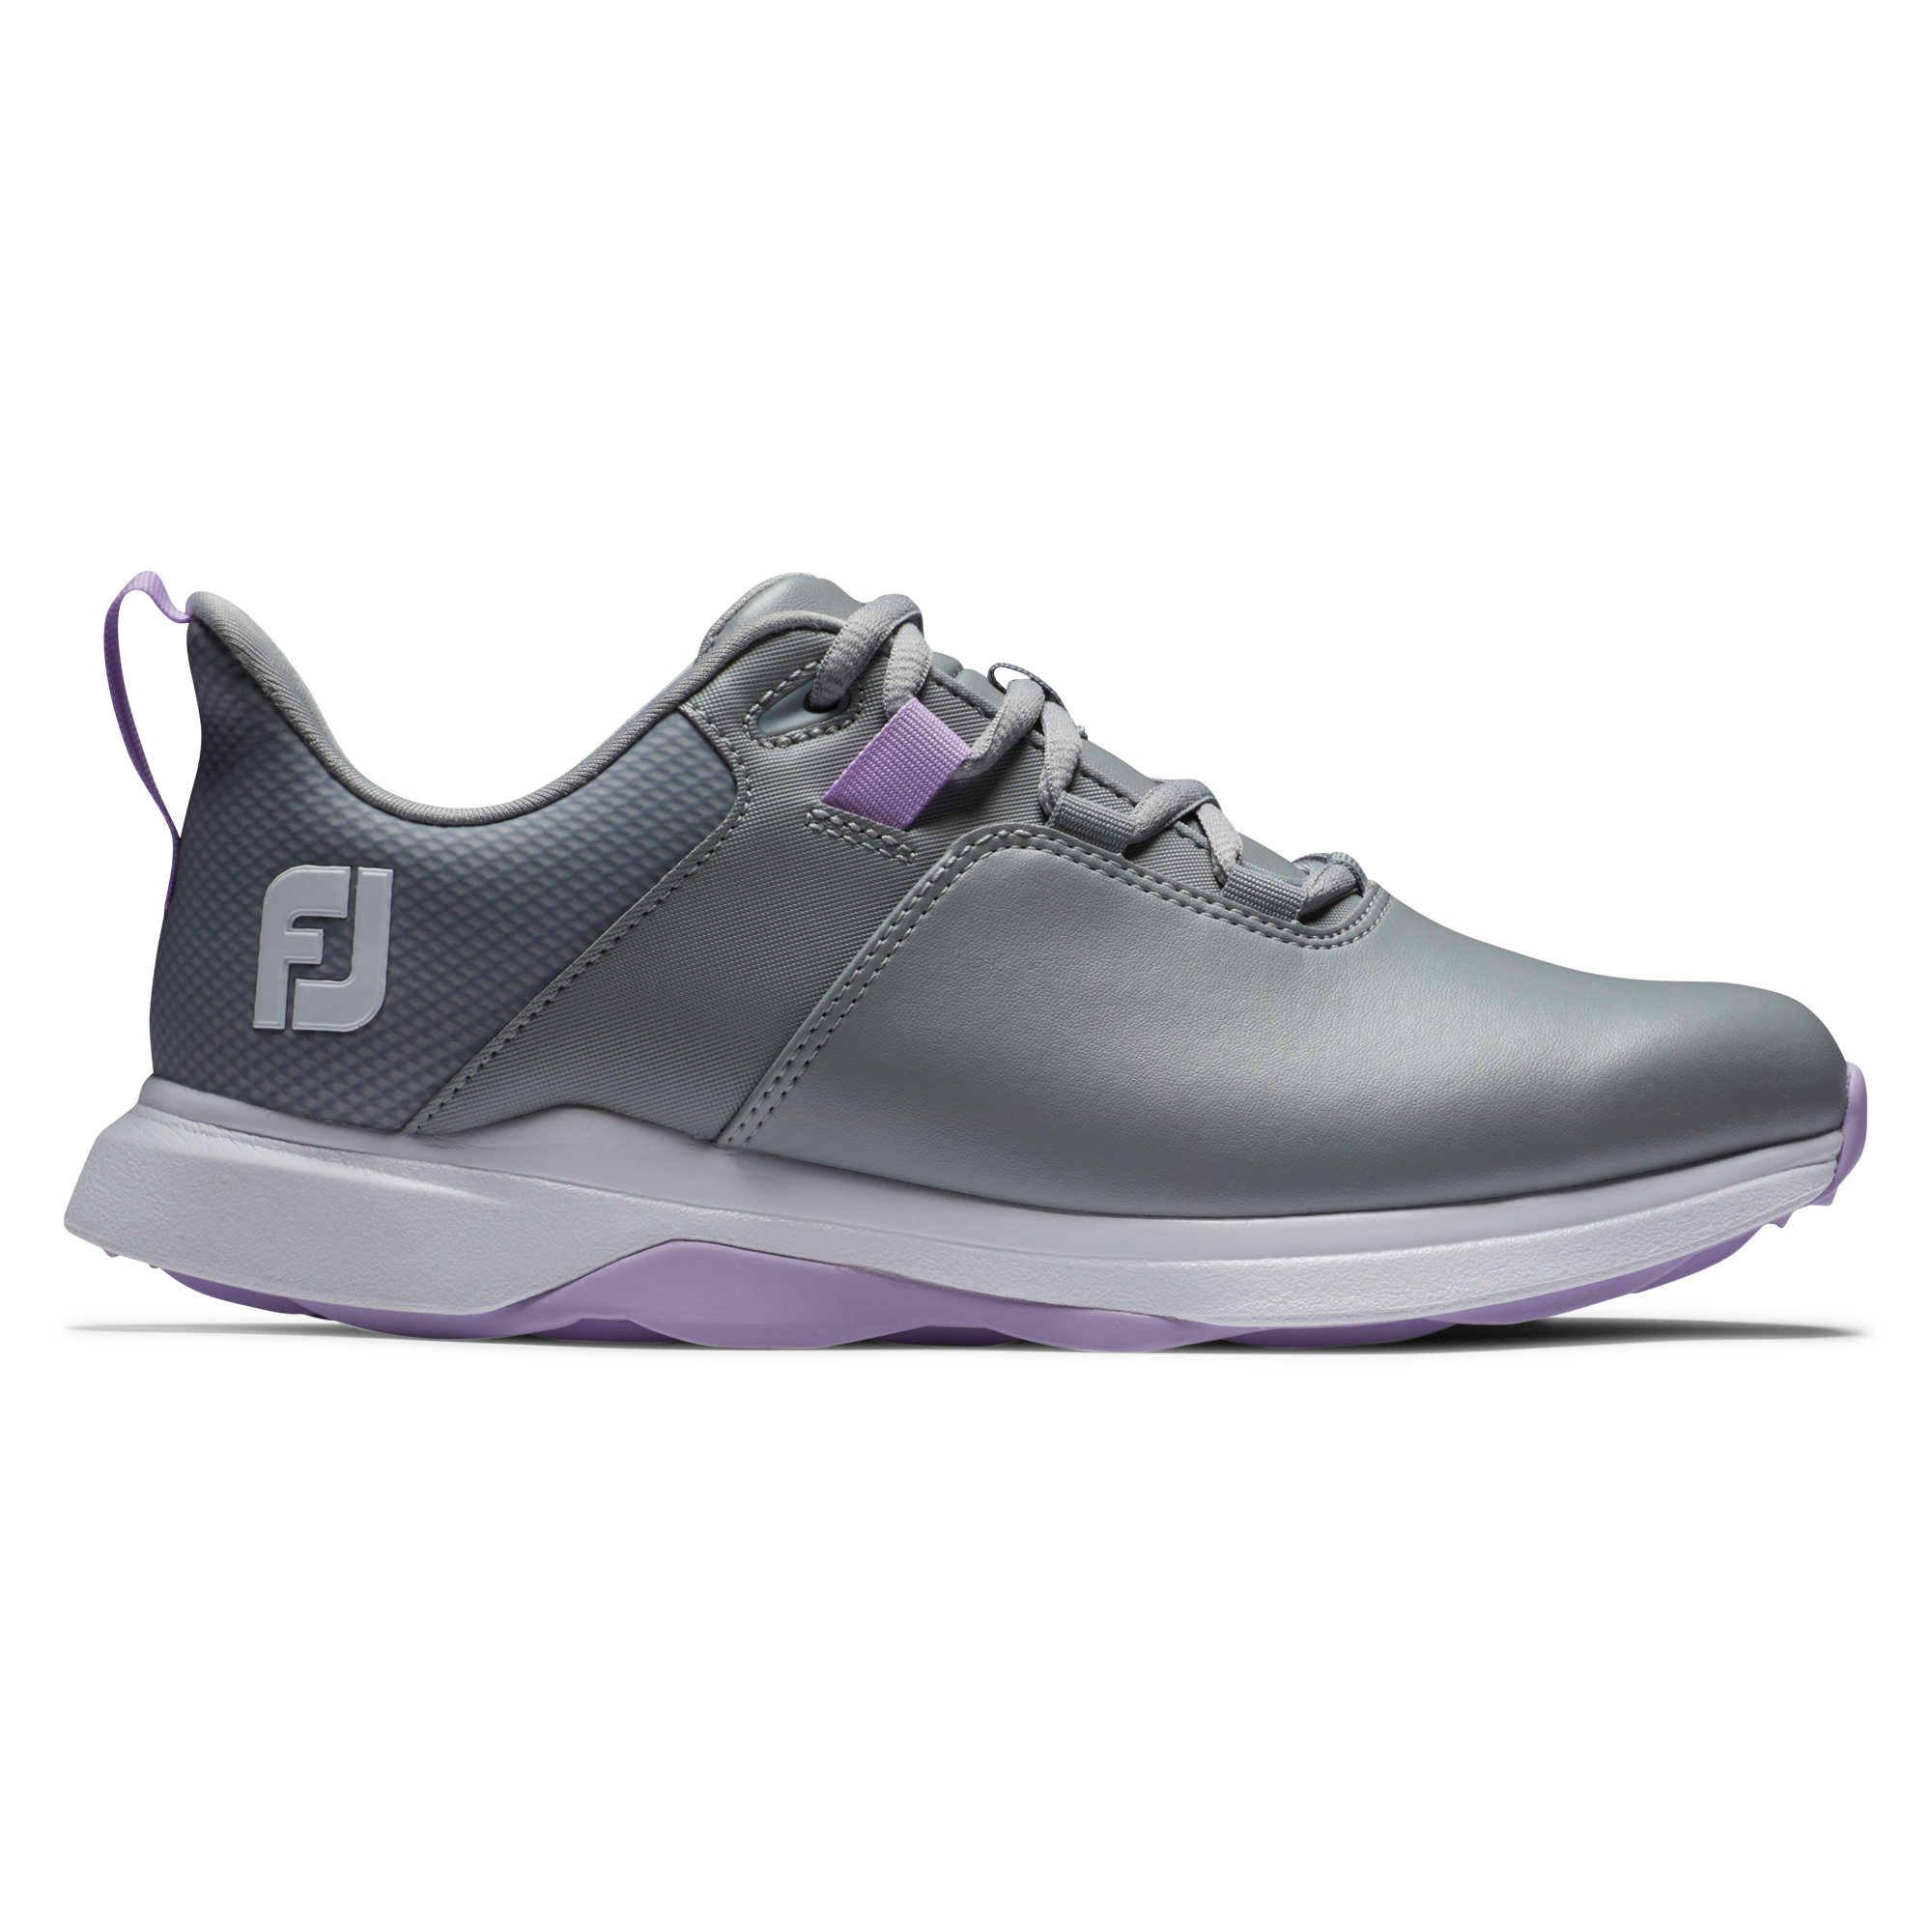 FootJoy ProLite dámské golfové boty, šedé